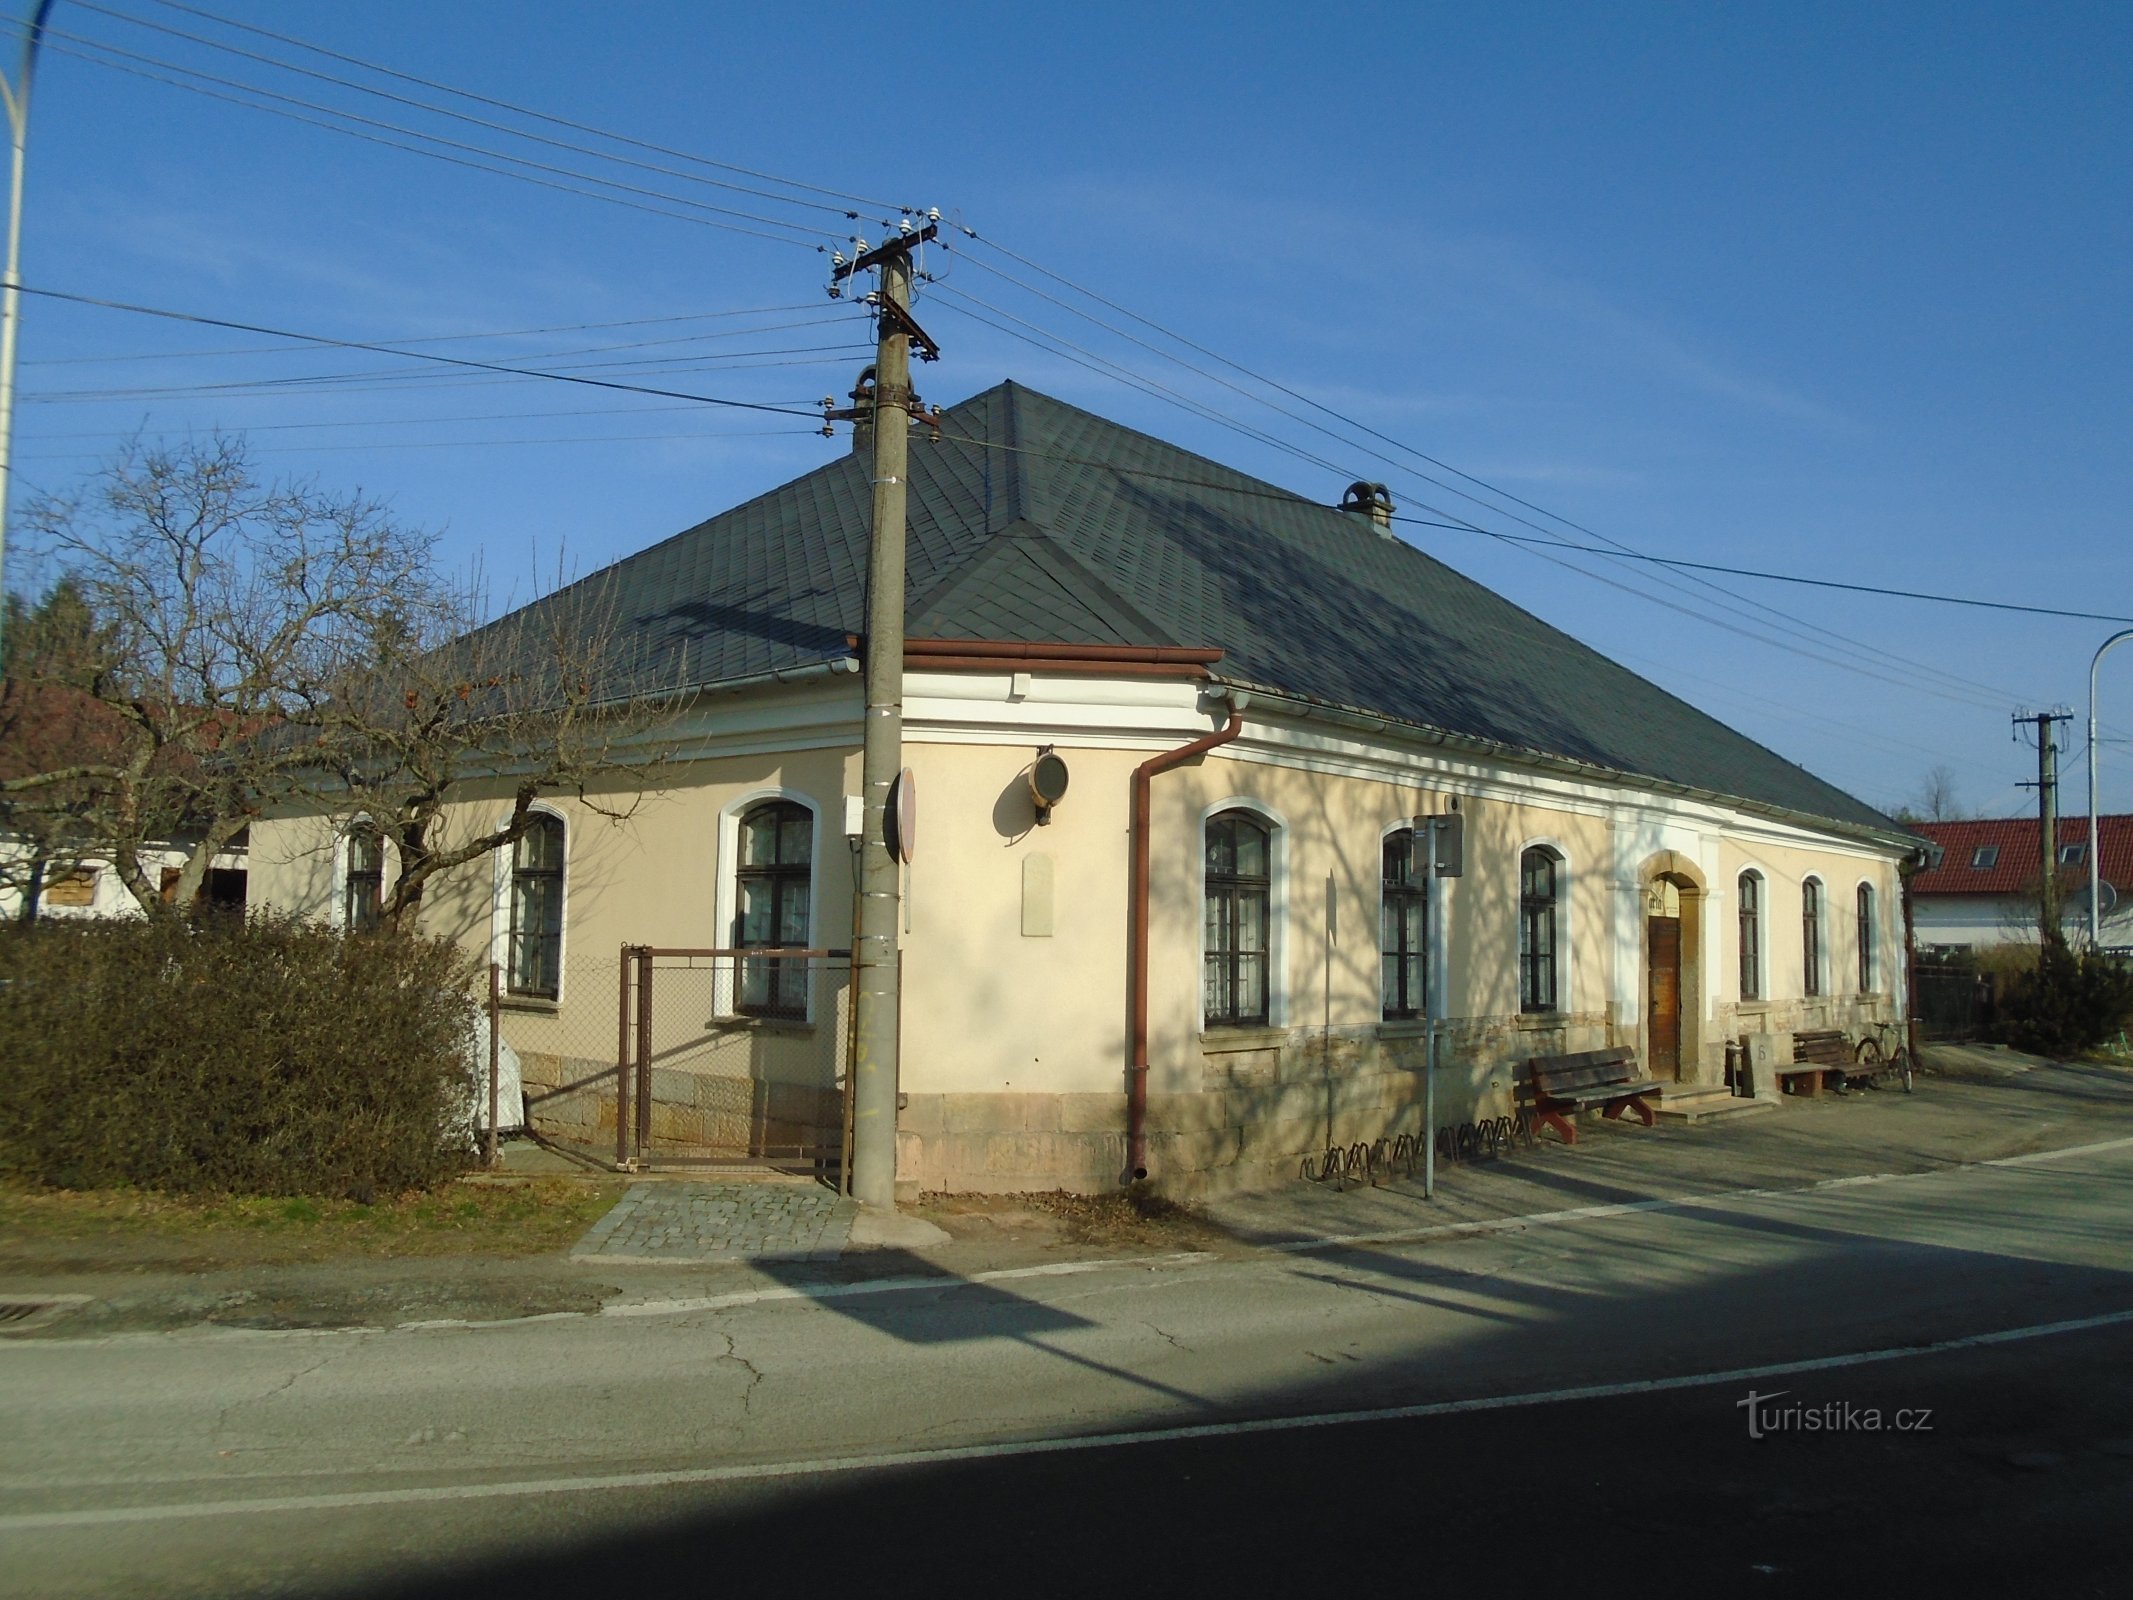 Podhůrská n. 76 (Hradec Králové, 23.1.2019 gennaio XNUMX)